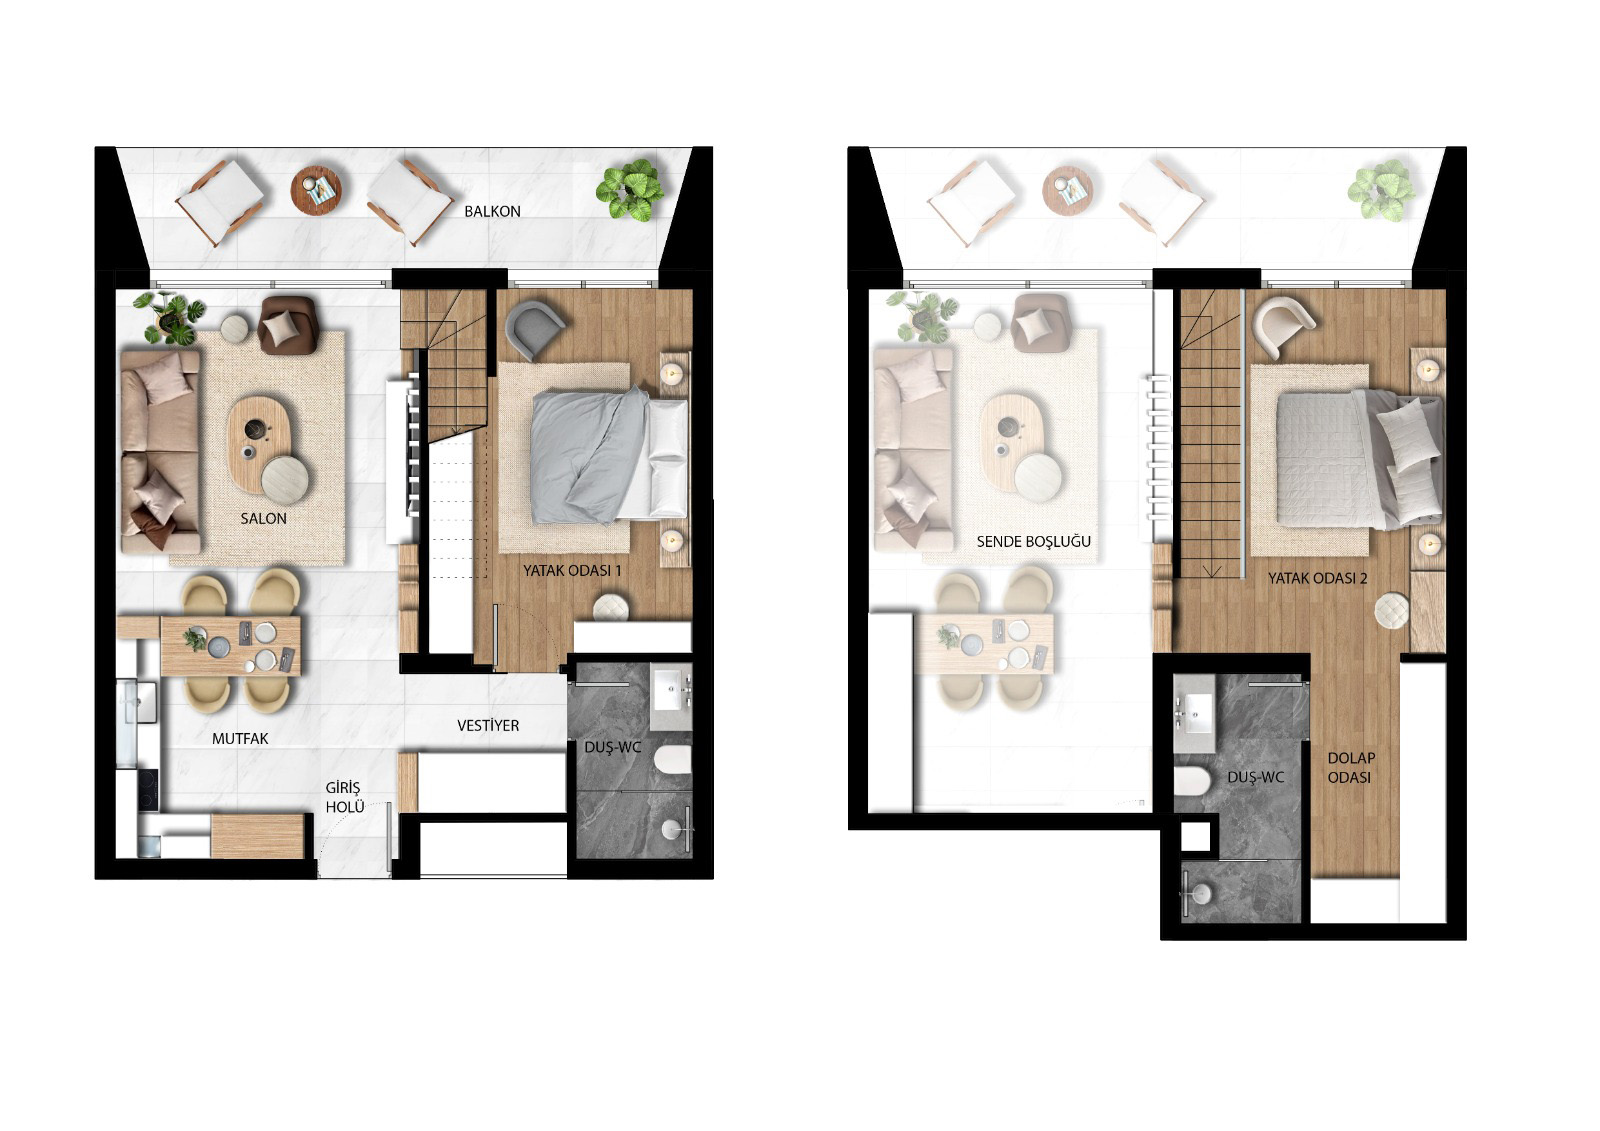 Planritning - Duplex takvåning med två sovrum